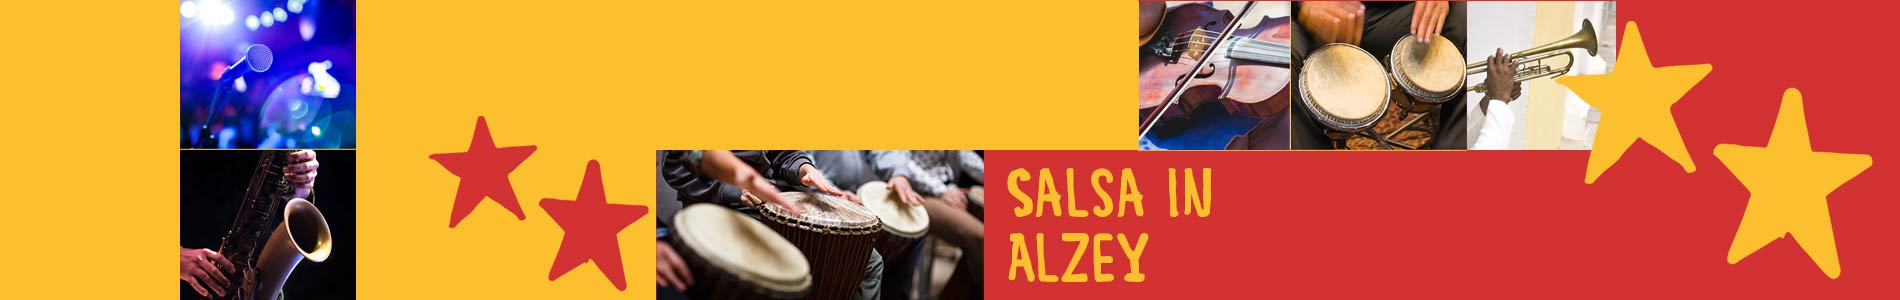 Salsa in Alzey – Salsa lernen und tanzen, Tanzkurse, Partys, Veranstaltungen